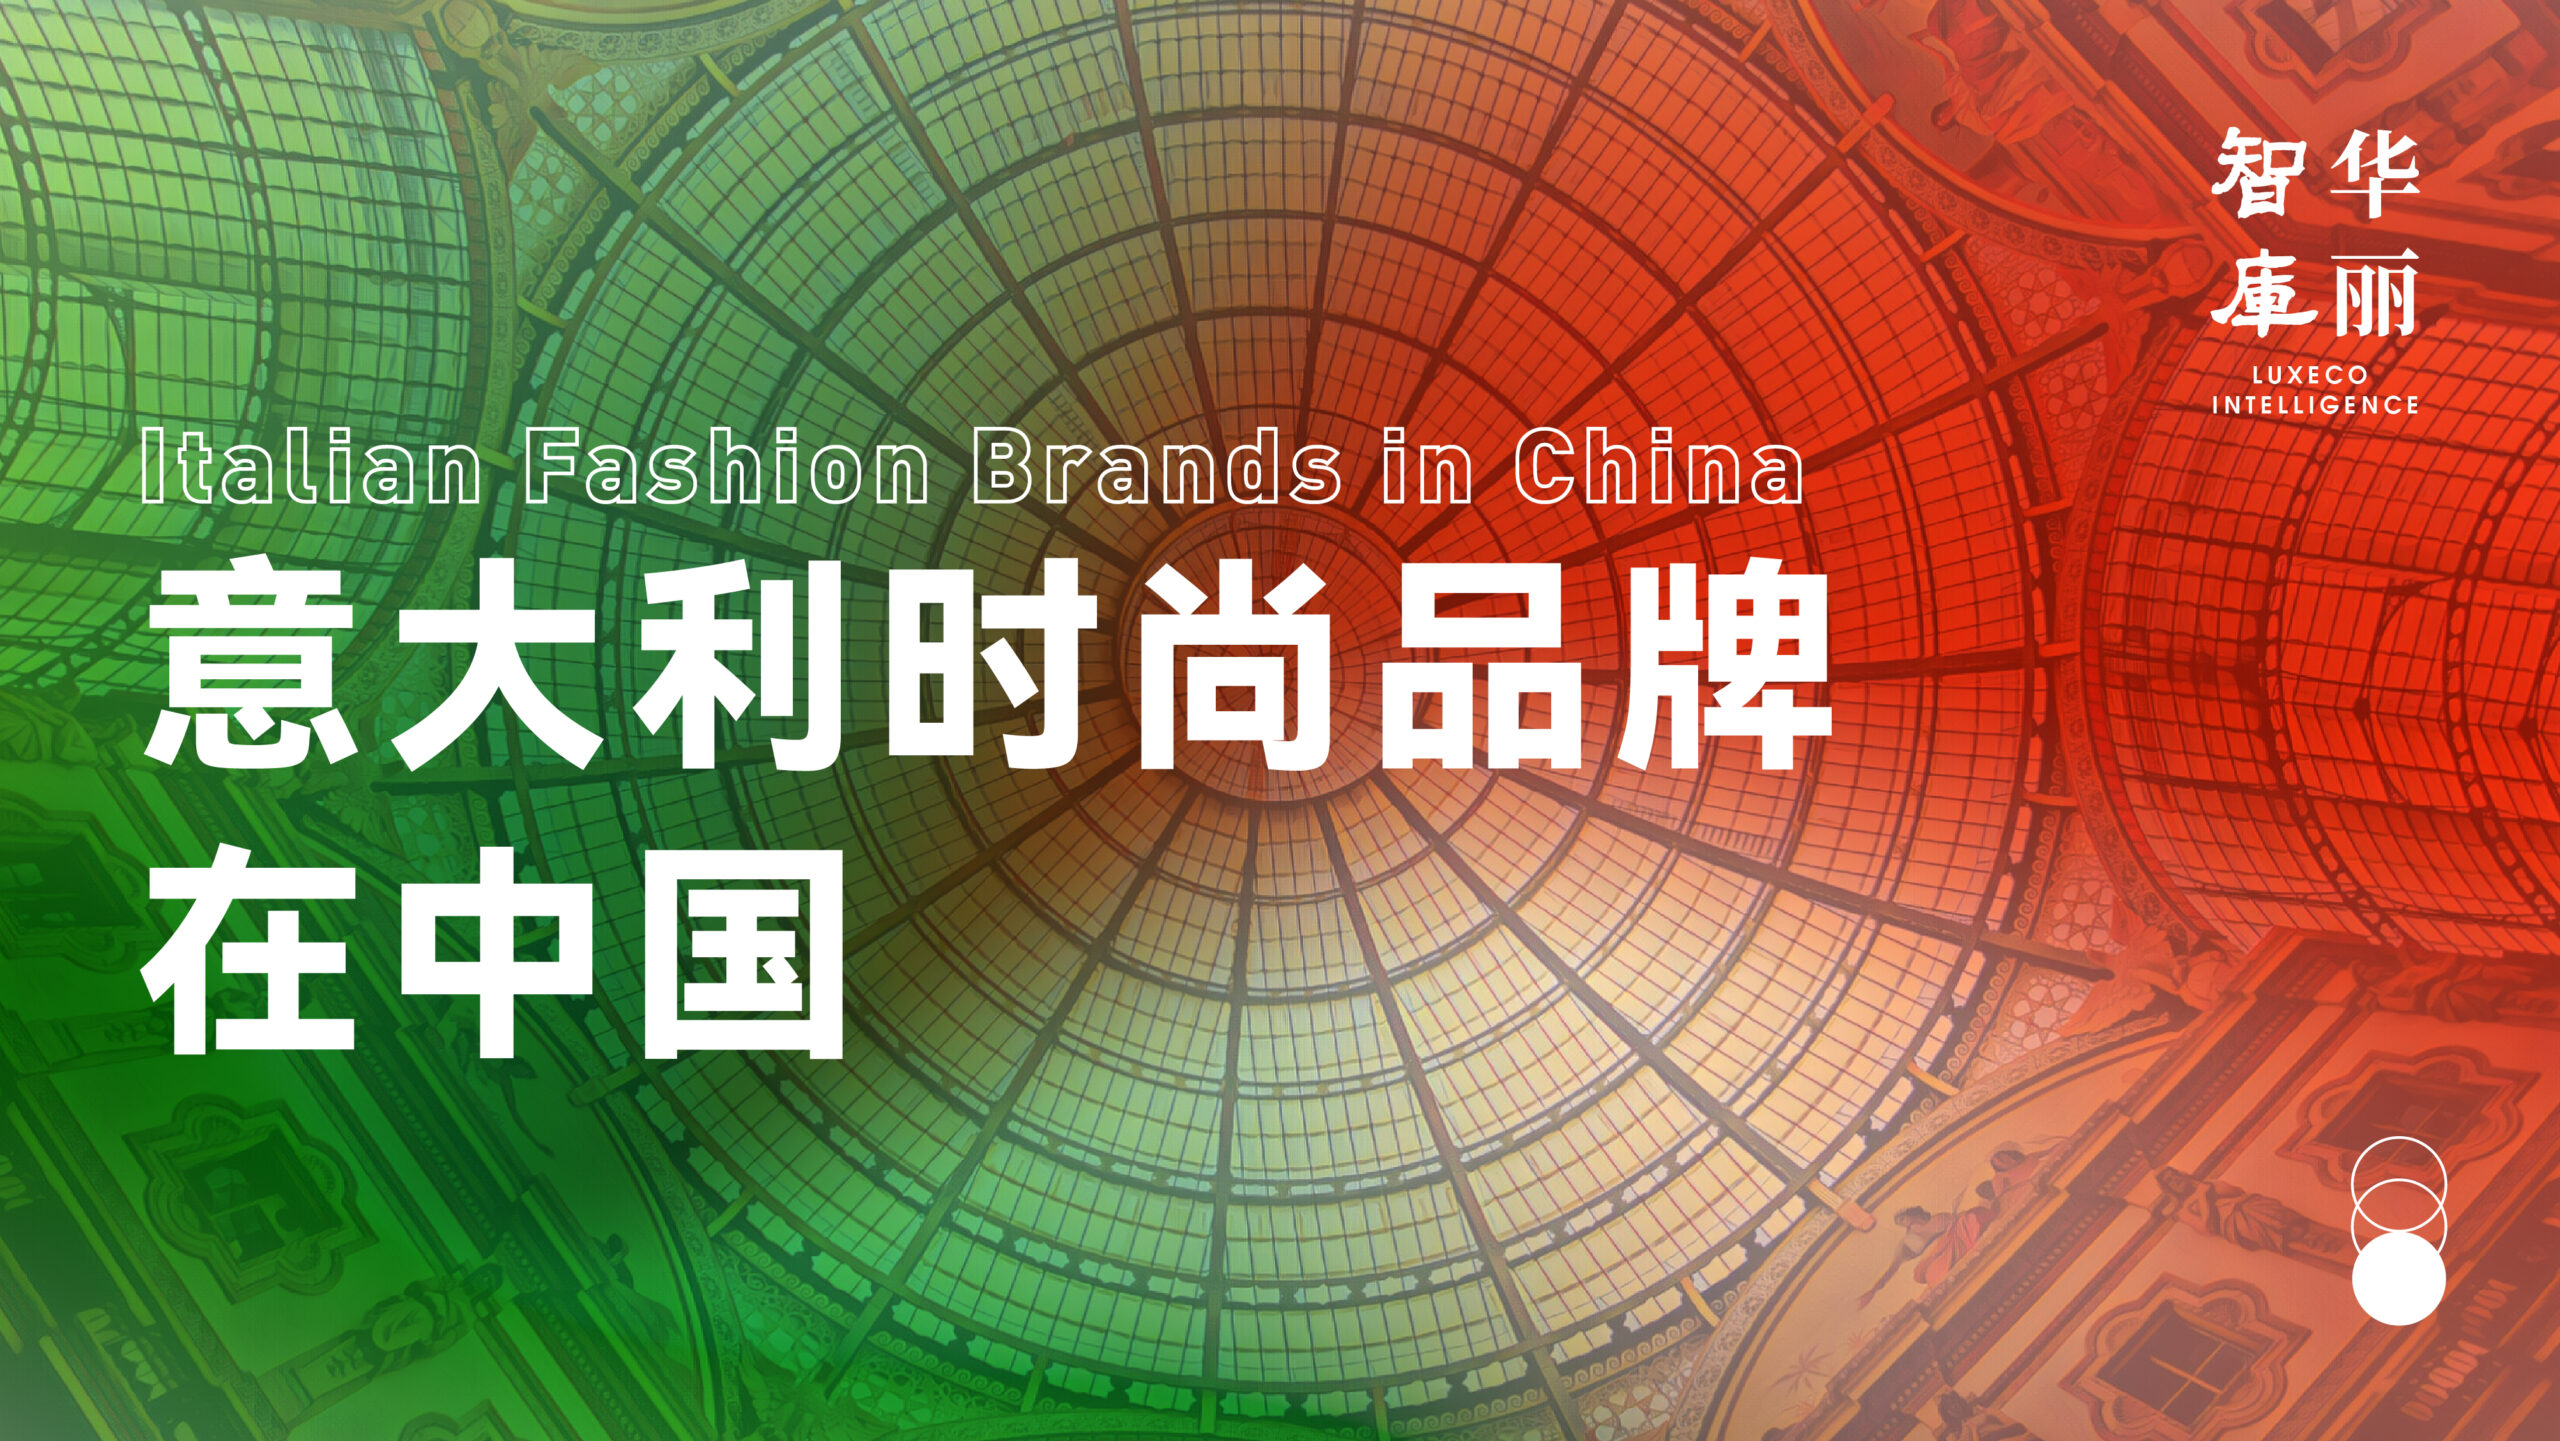 深入调研123个意大利品牌，【华丽智库】这份55页的《意大利时尚品牌在中国》最新报告含金量十足！